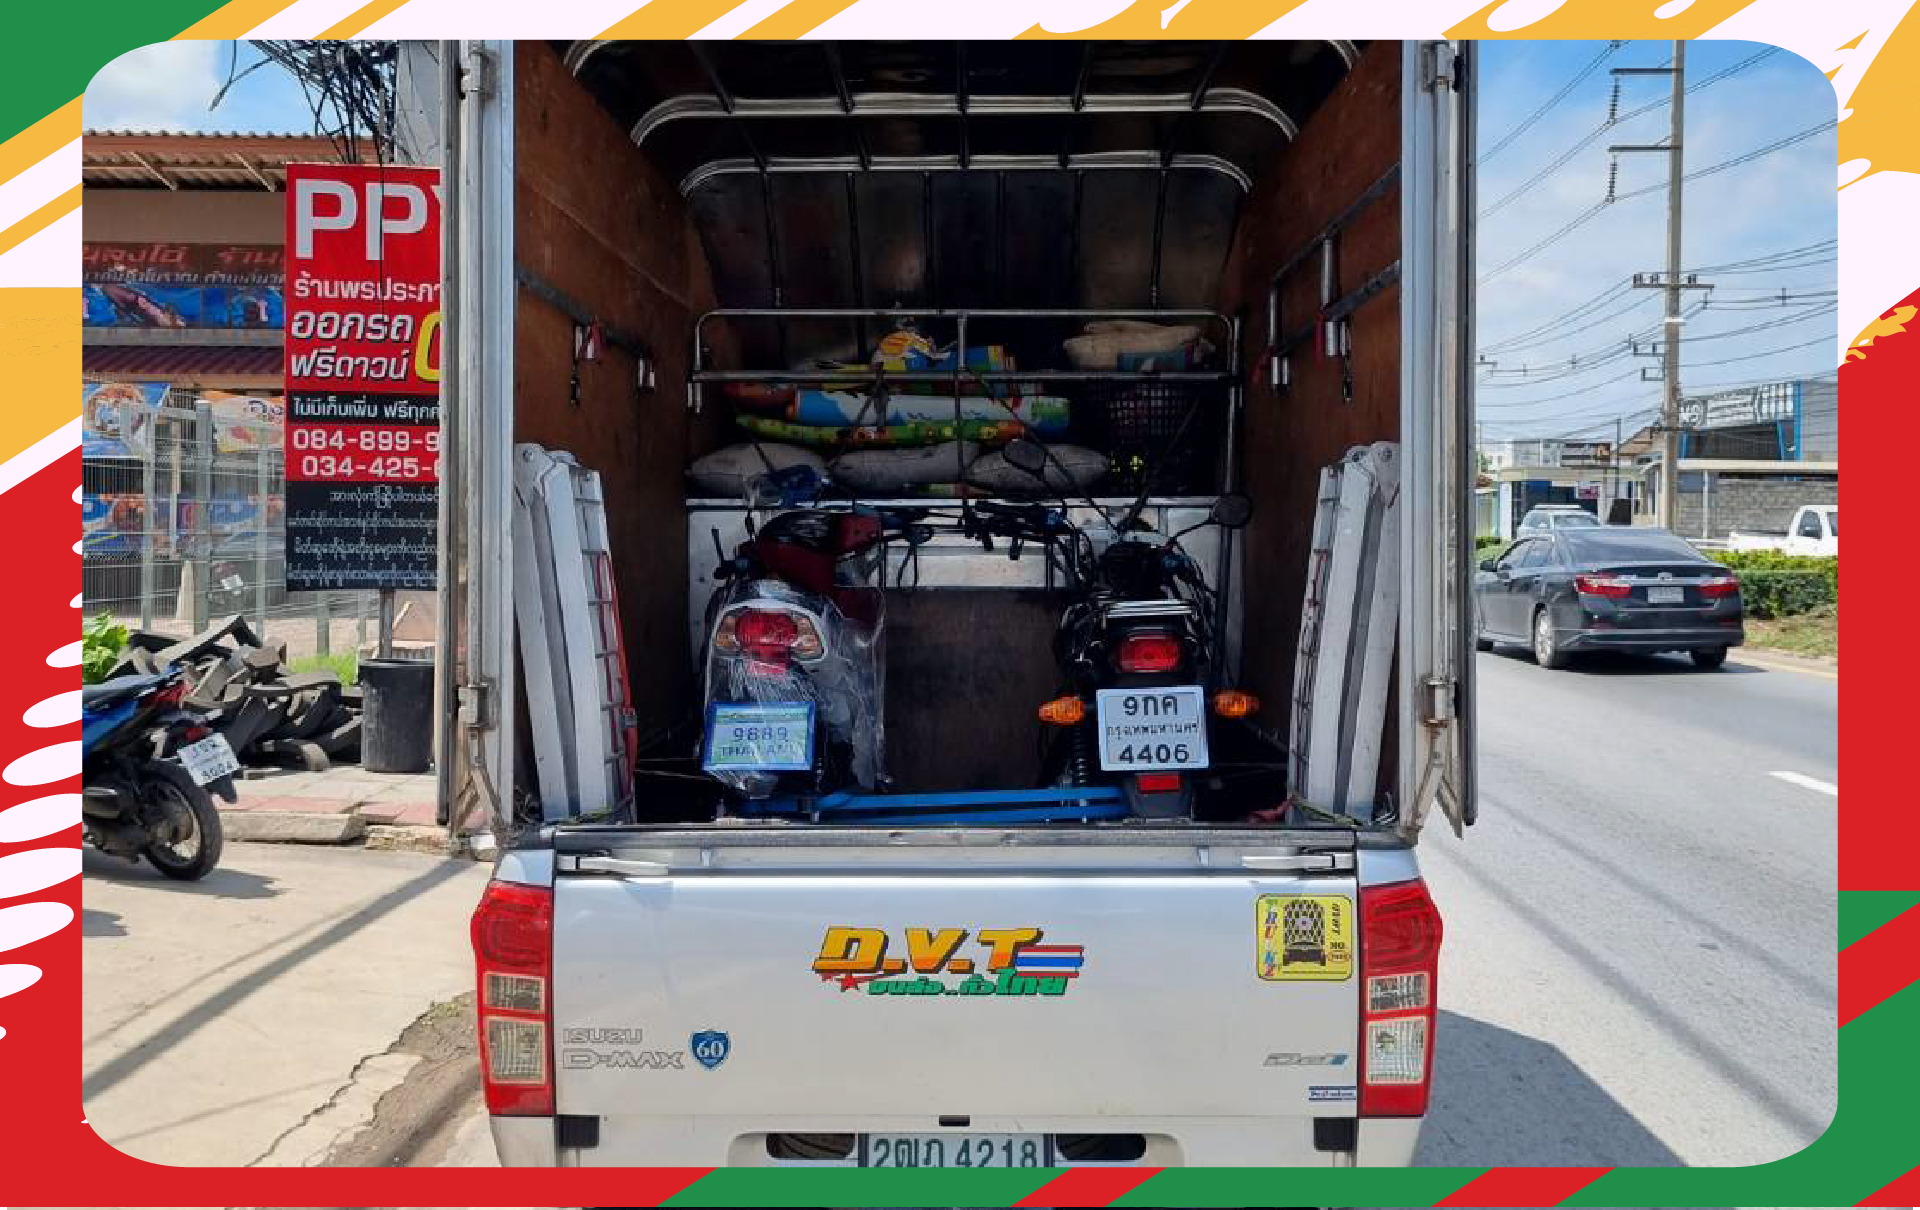 DVT transport - บริการย้ายบ้าน ขนส่งสินค้าชิ้นใหญ่ ขนส่งรถบิ๊กไบค์ ด้วยรถกระบะตู้ทึบ โดยผู้ให้บริการมืออาชีพ ส่งด่วน ส่งไว ทั่วประเทศไทย